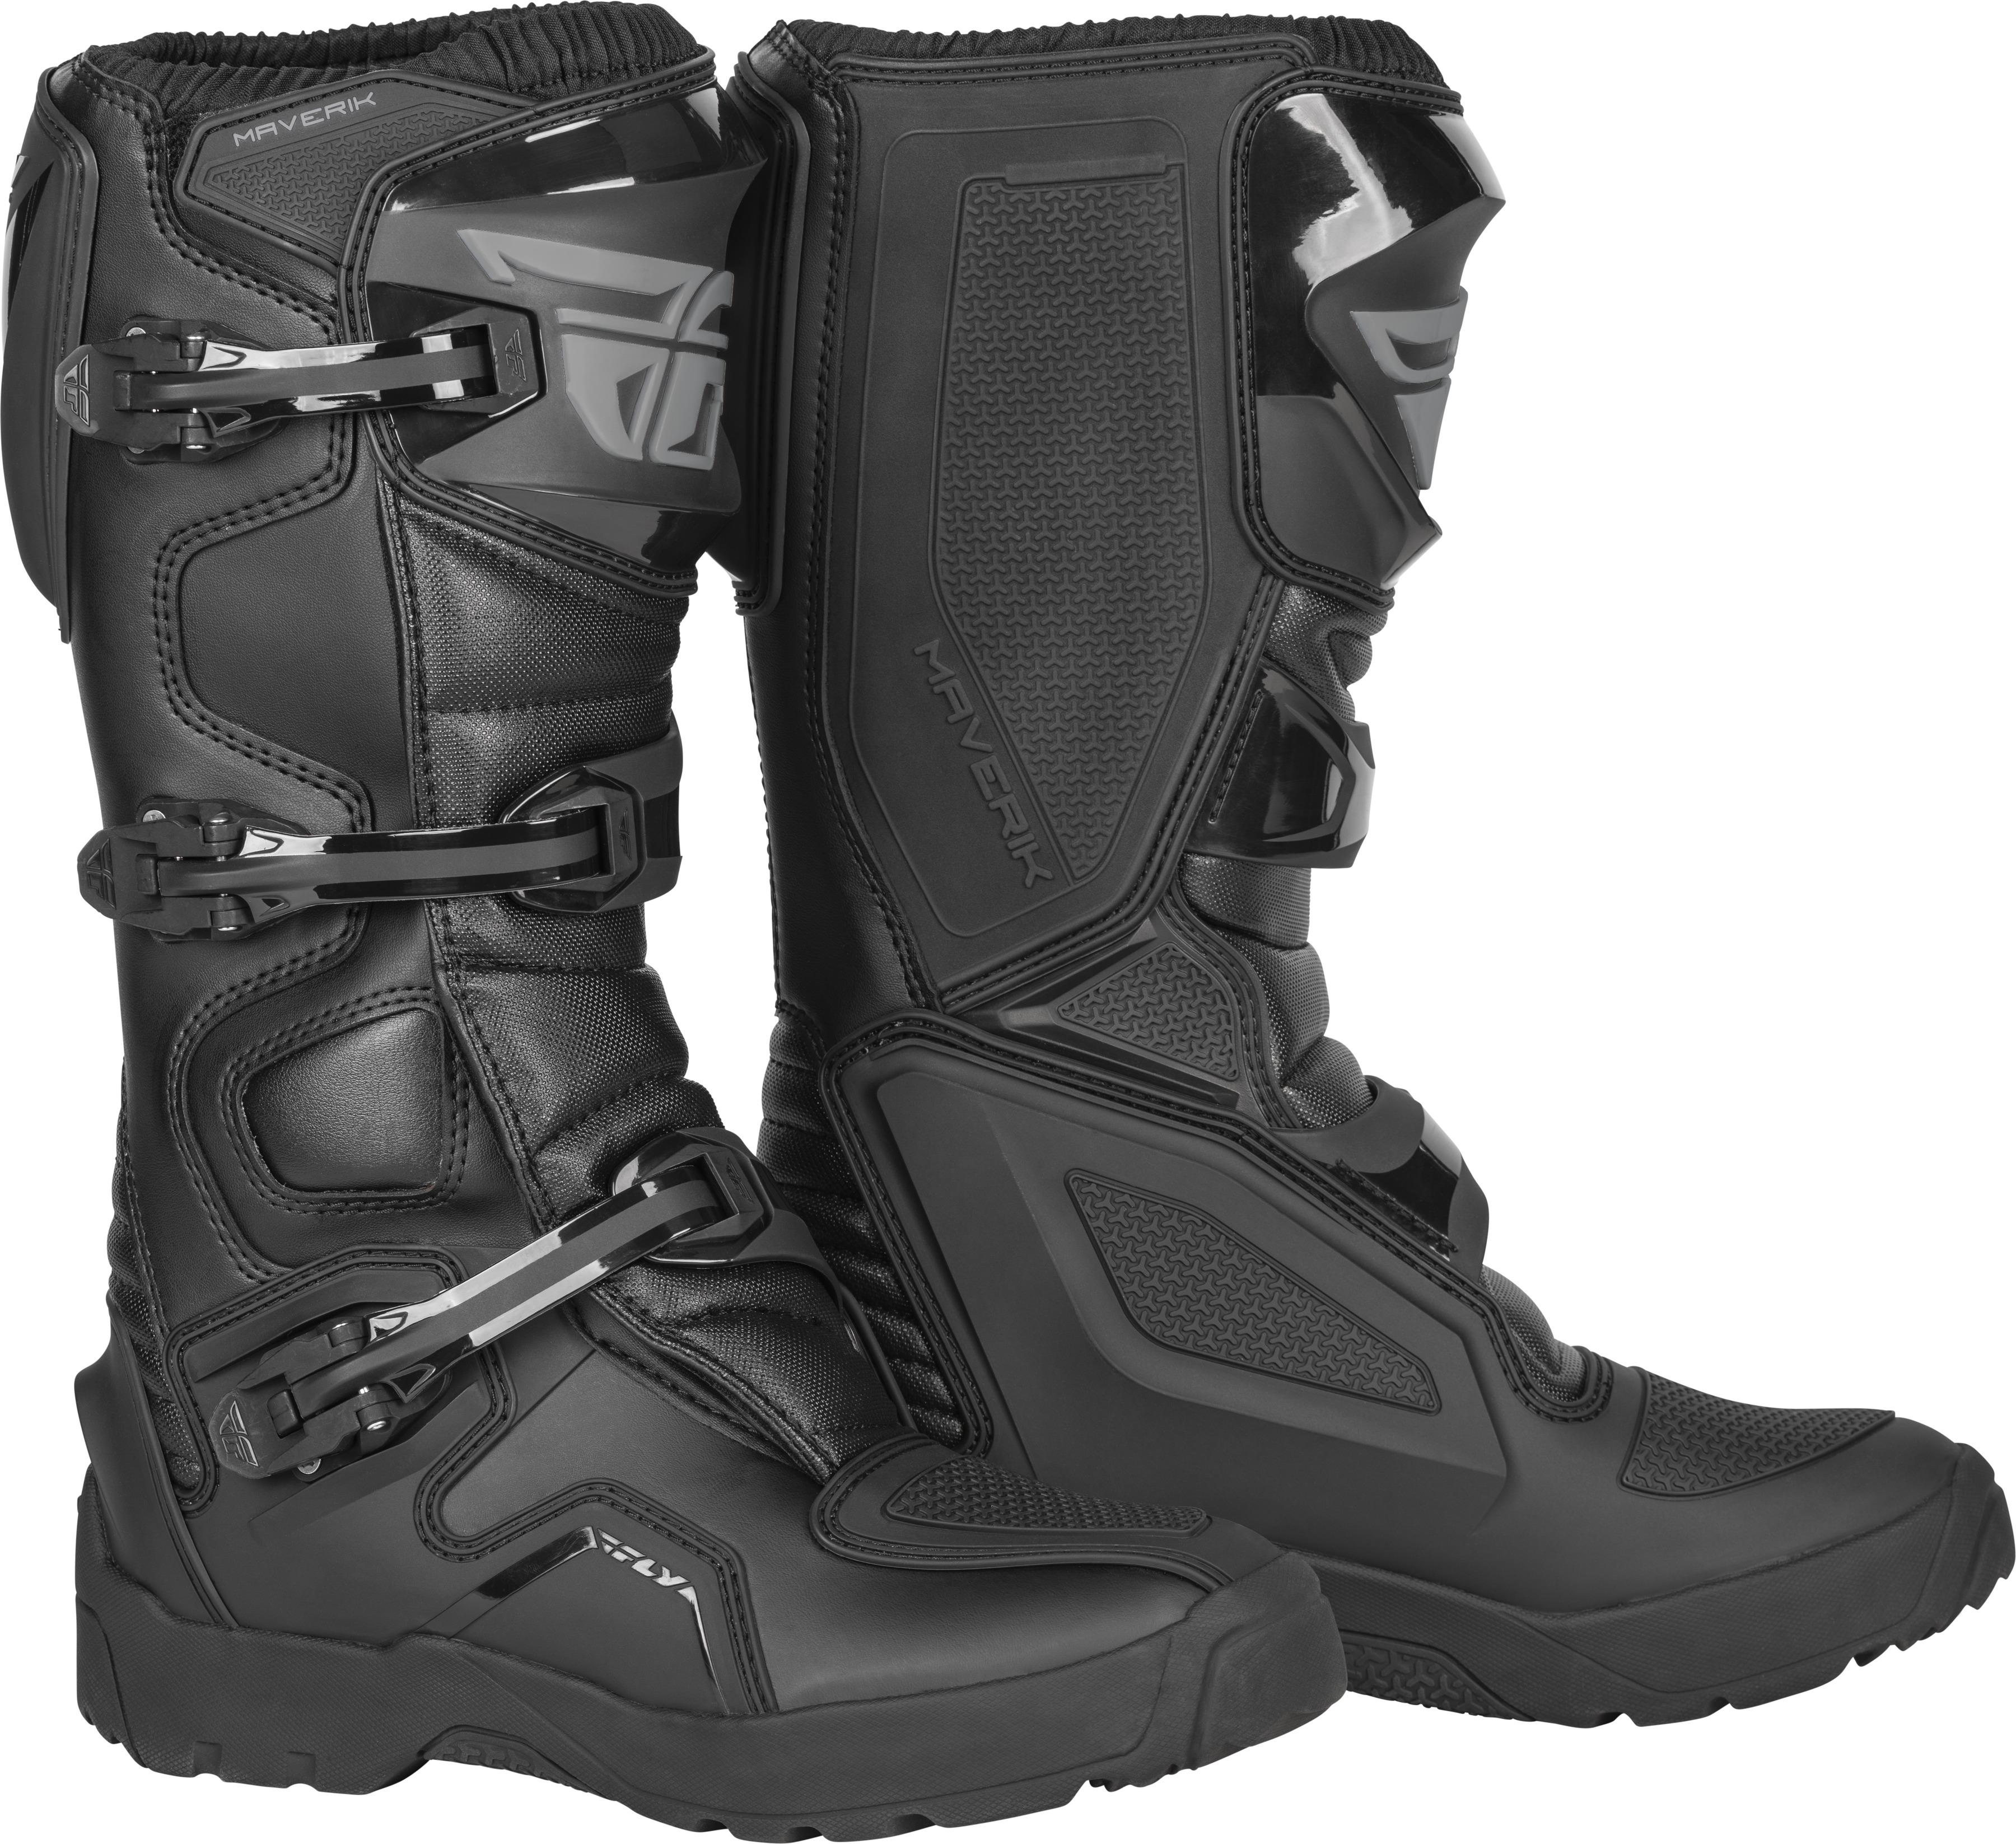 Maverik Enduro Boot Black Size 7 - Click Image to Close